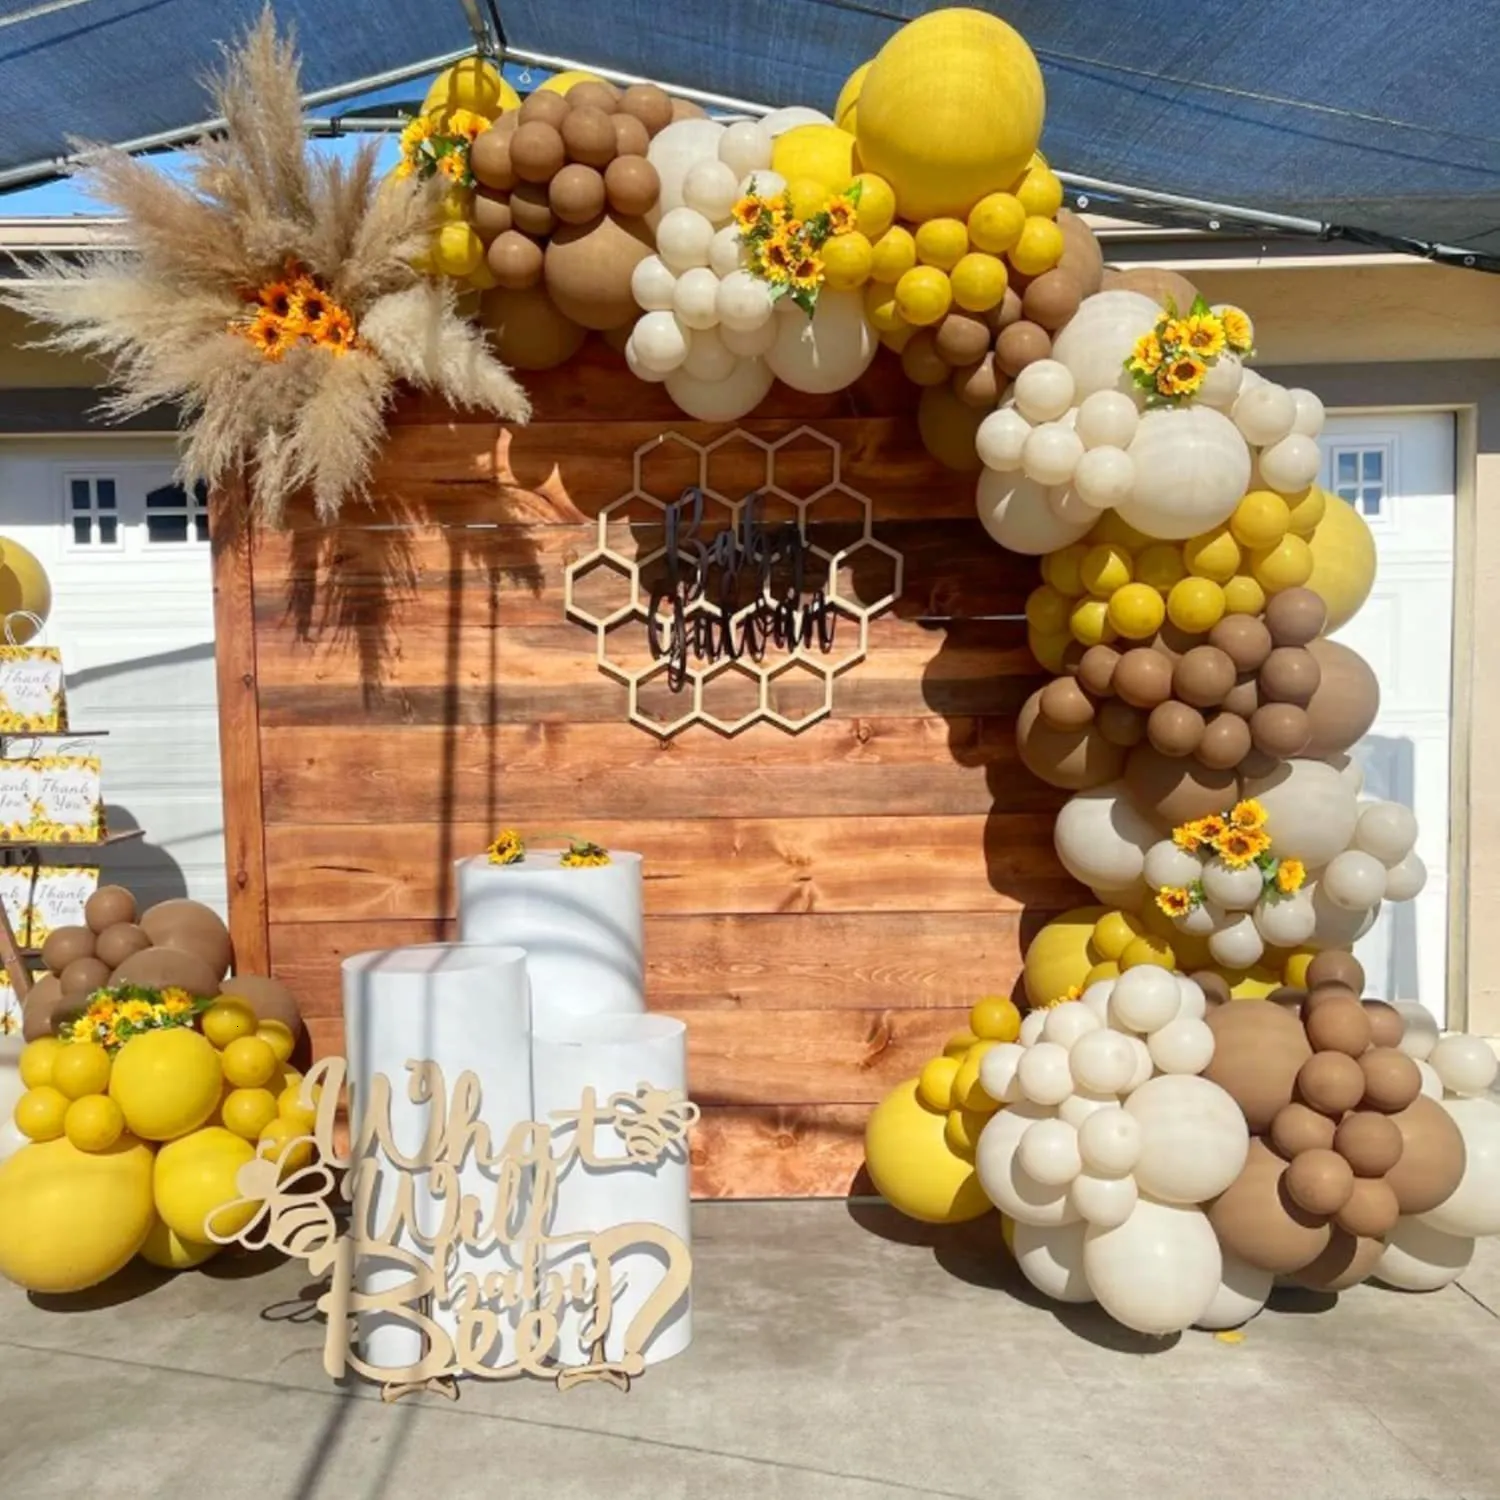 Andere evenementenfeestje Benodigdheden 142 % Lemon Geel Balloon Garland Arch Kit Sand Witte Kaki Ballonnen voor kinderen Baby Shower Bruiloft Verjaardagsfeest Decoraties 230321